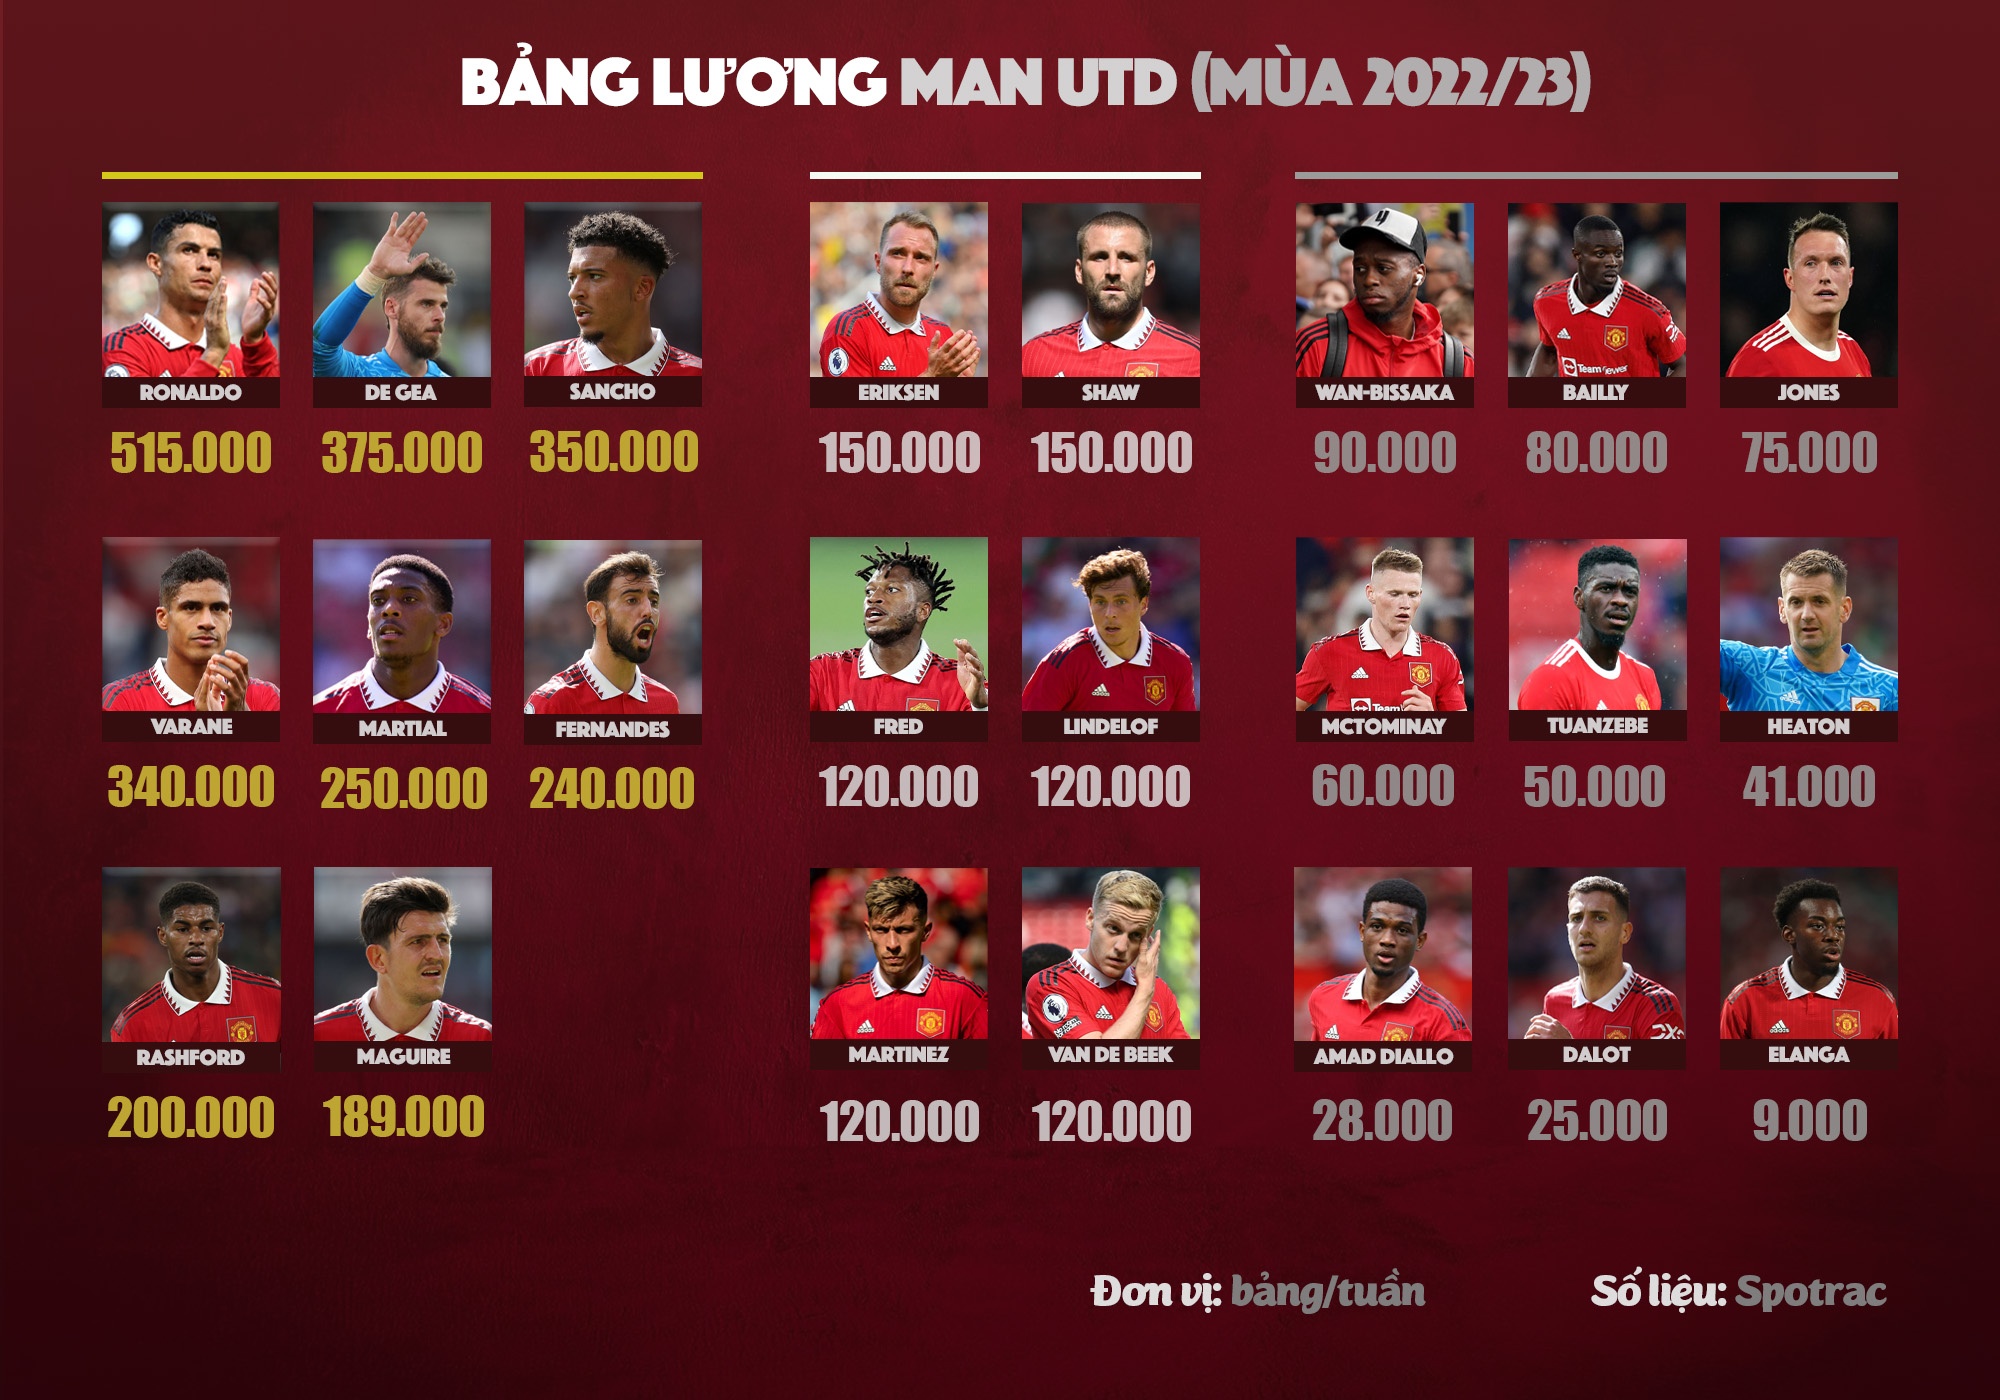 Bảng lương bất ổn của Man Utd - ảnh 2